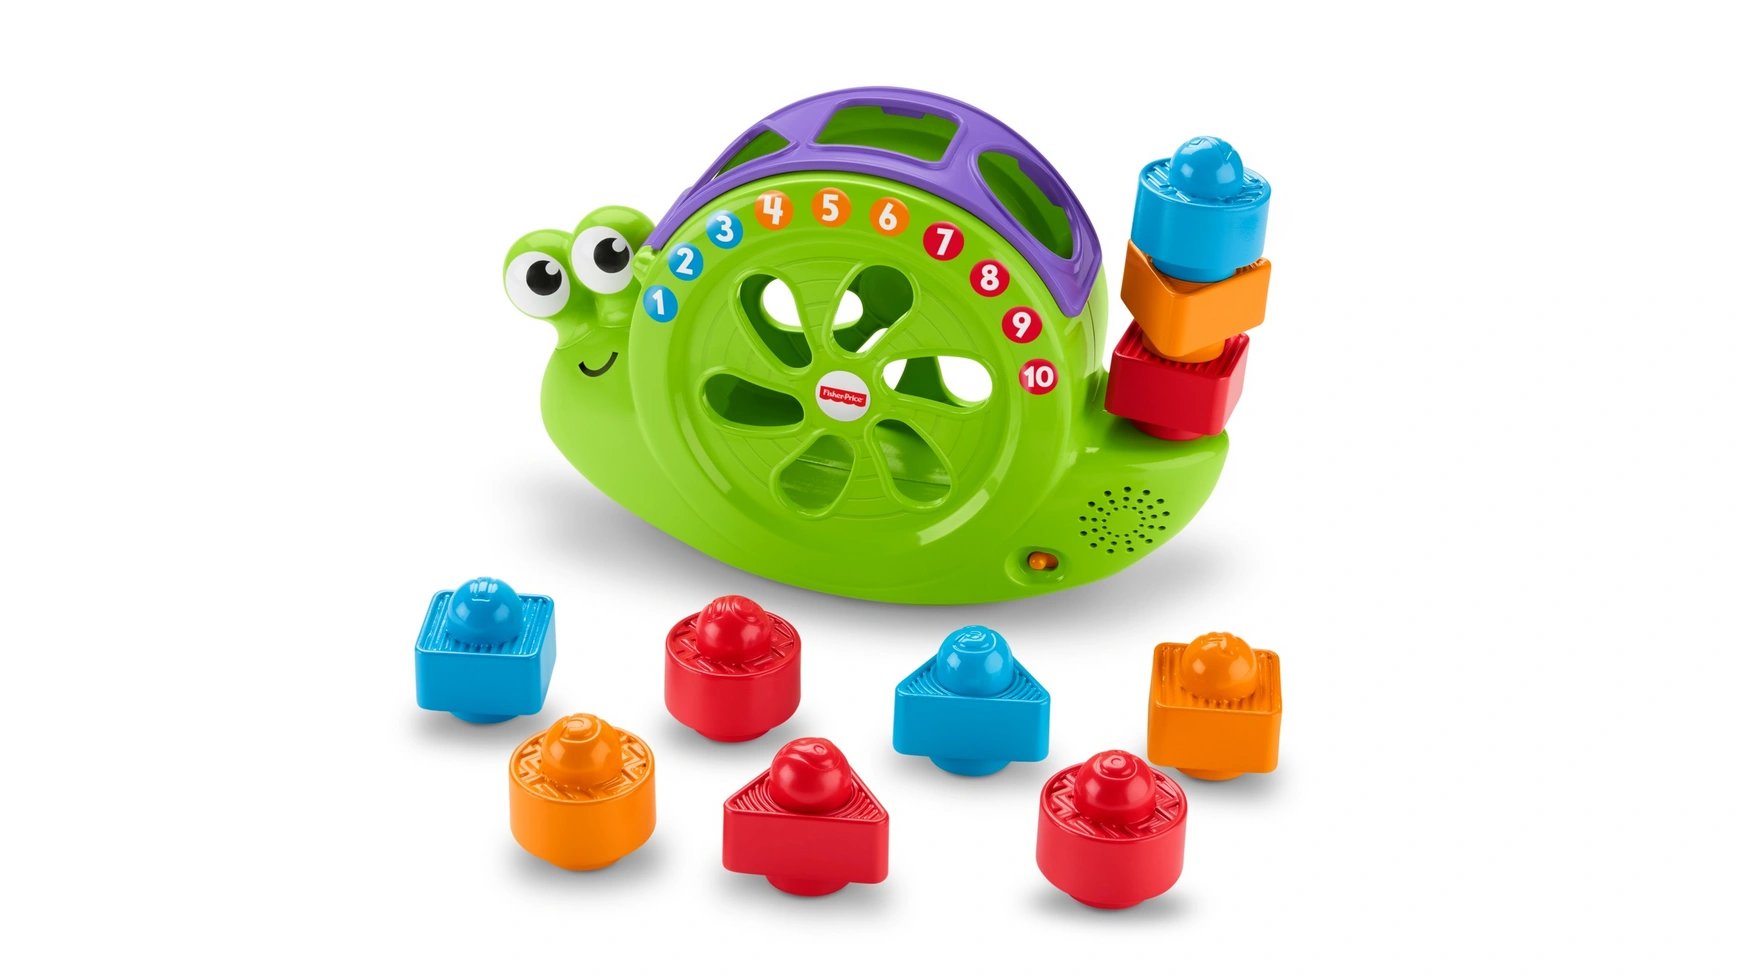 Музыкальная улитка Fisher Price Babies, подключаемая игрушка, складывающаяся игра, развивающая игрушка цена и фото